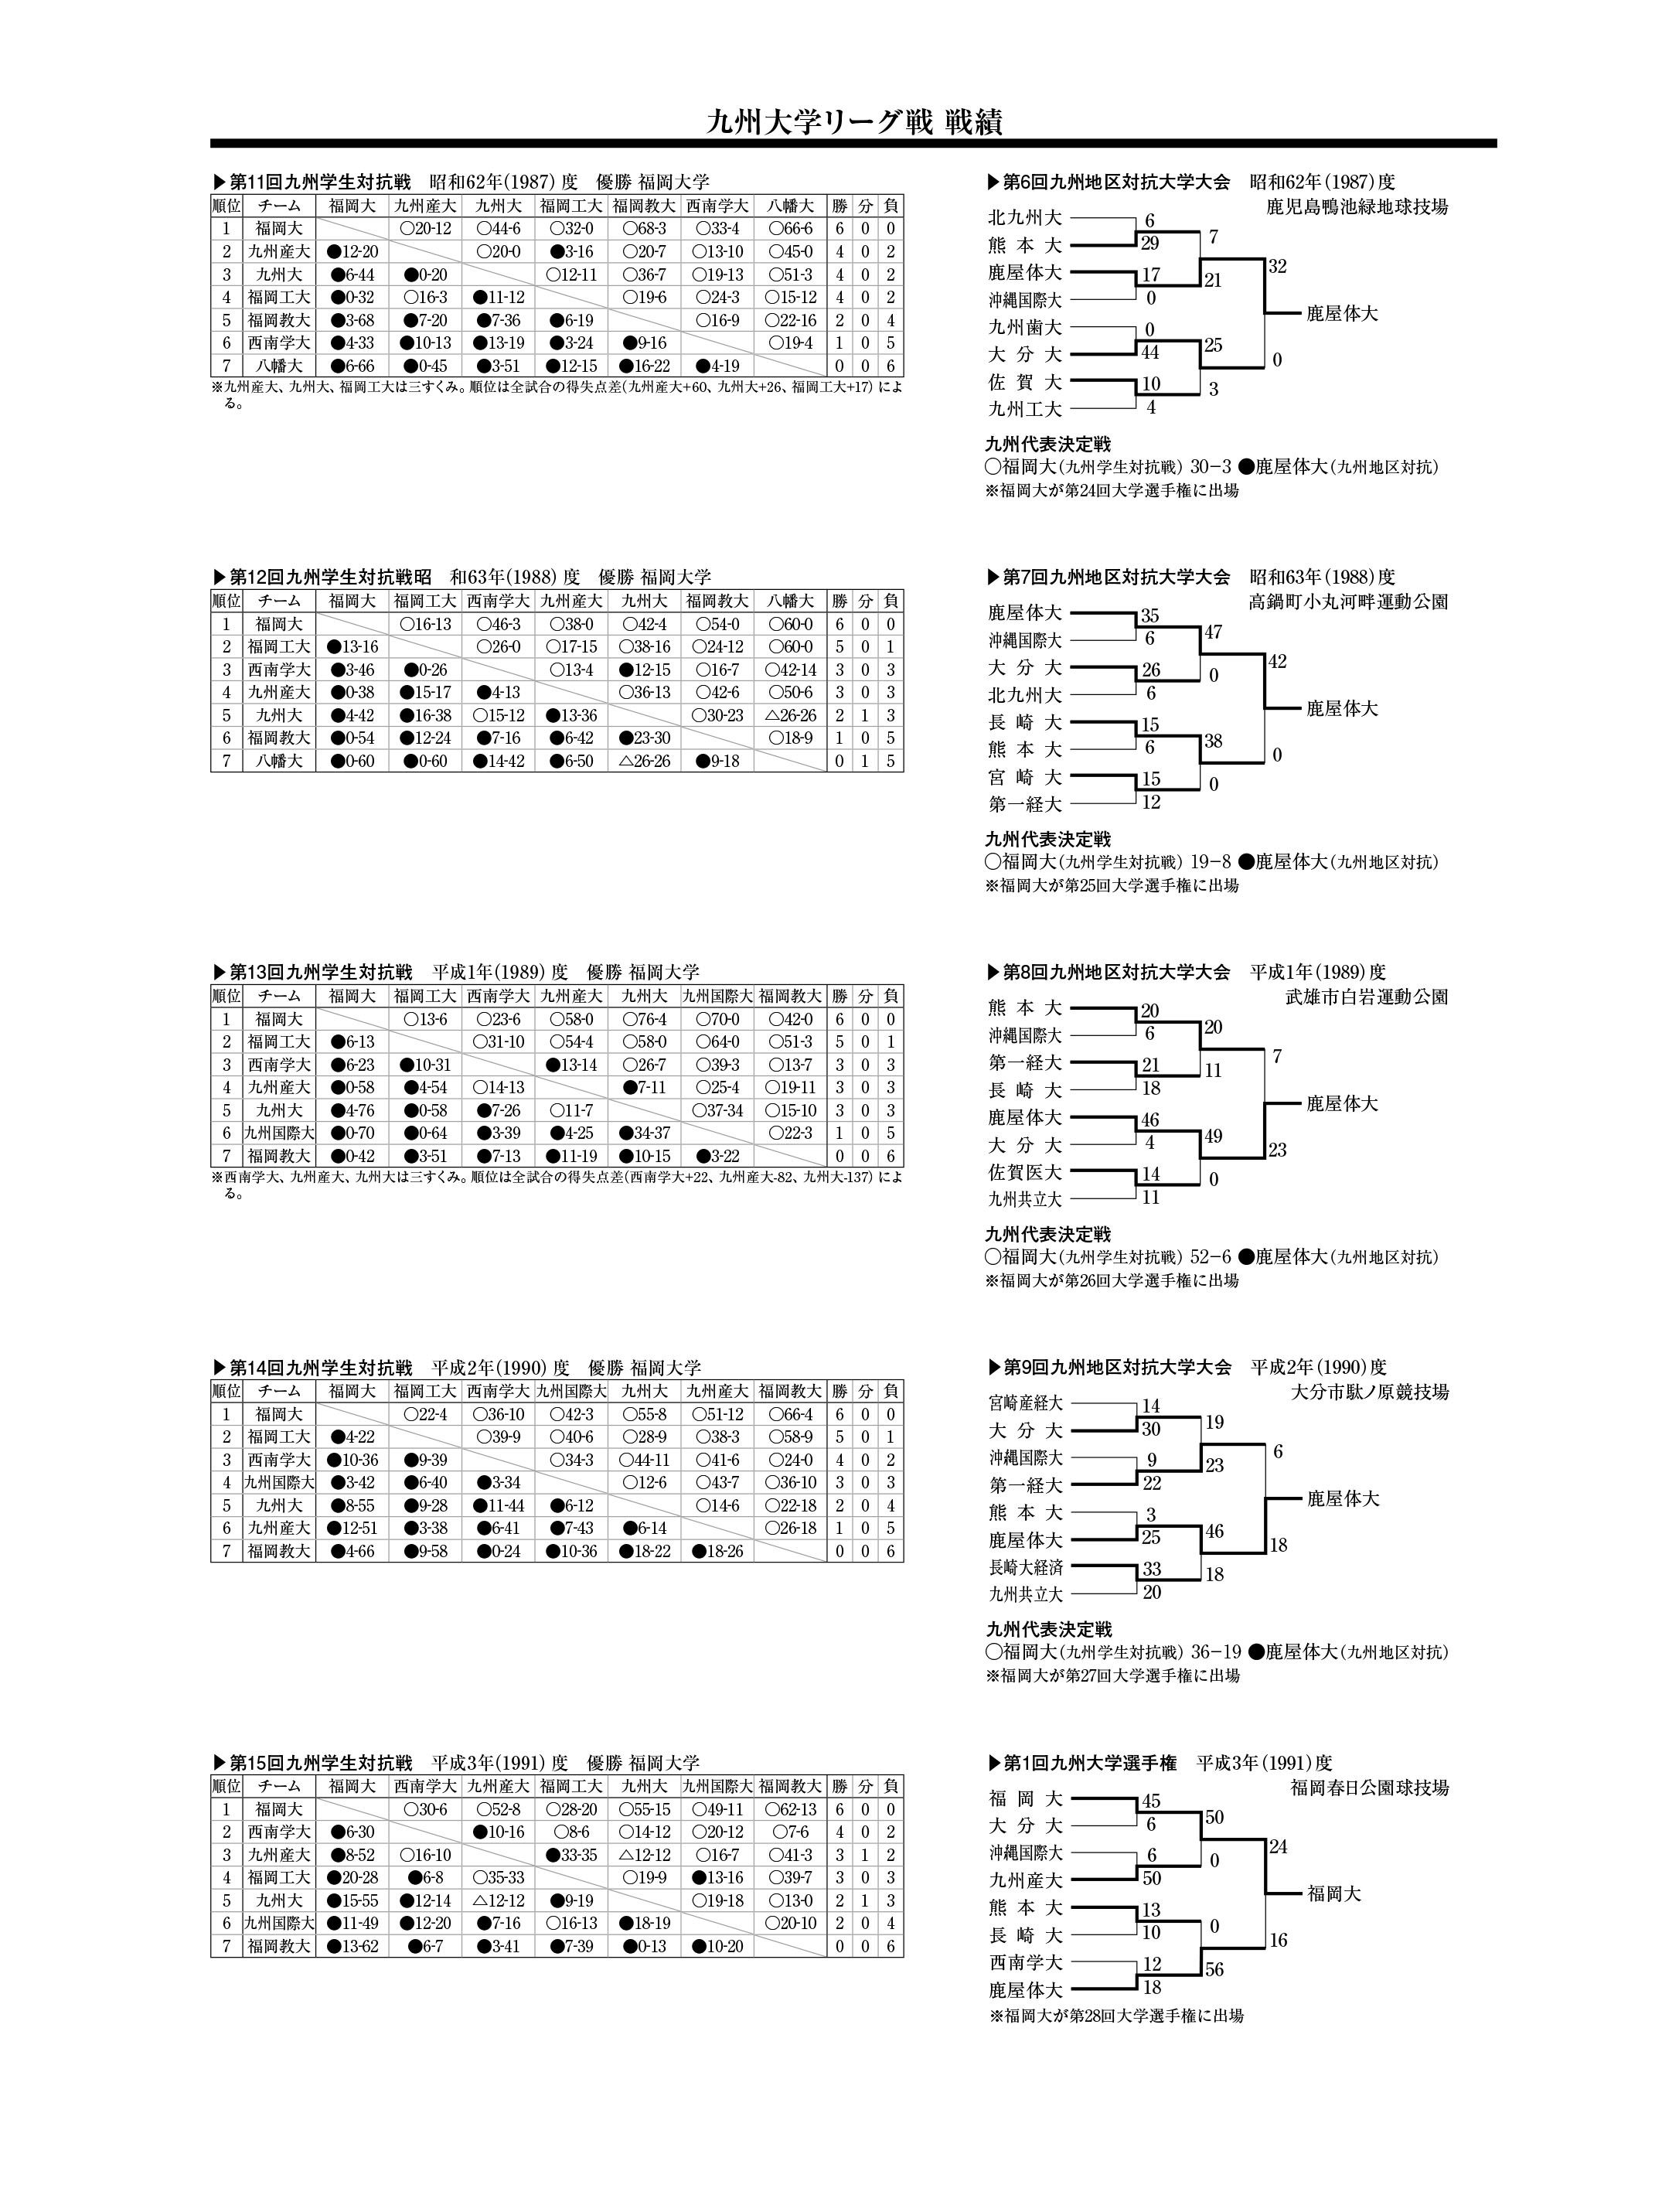 九州大学リーグ戦(昭和62年度～平成3年度)戦績一覧